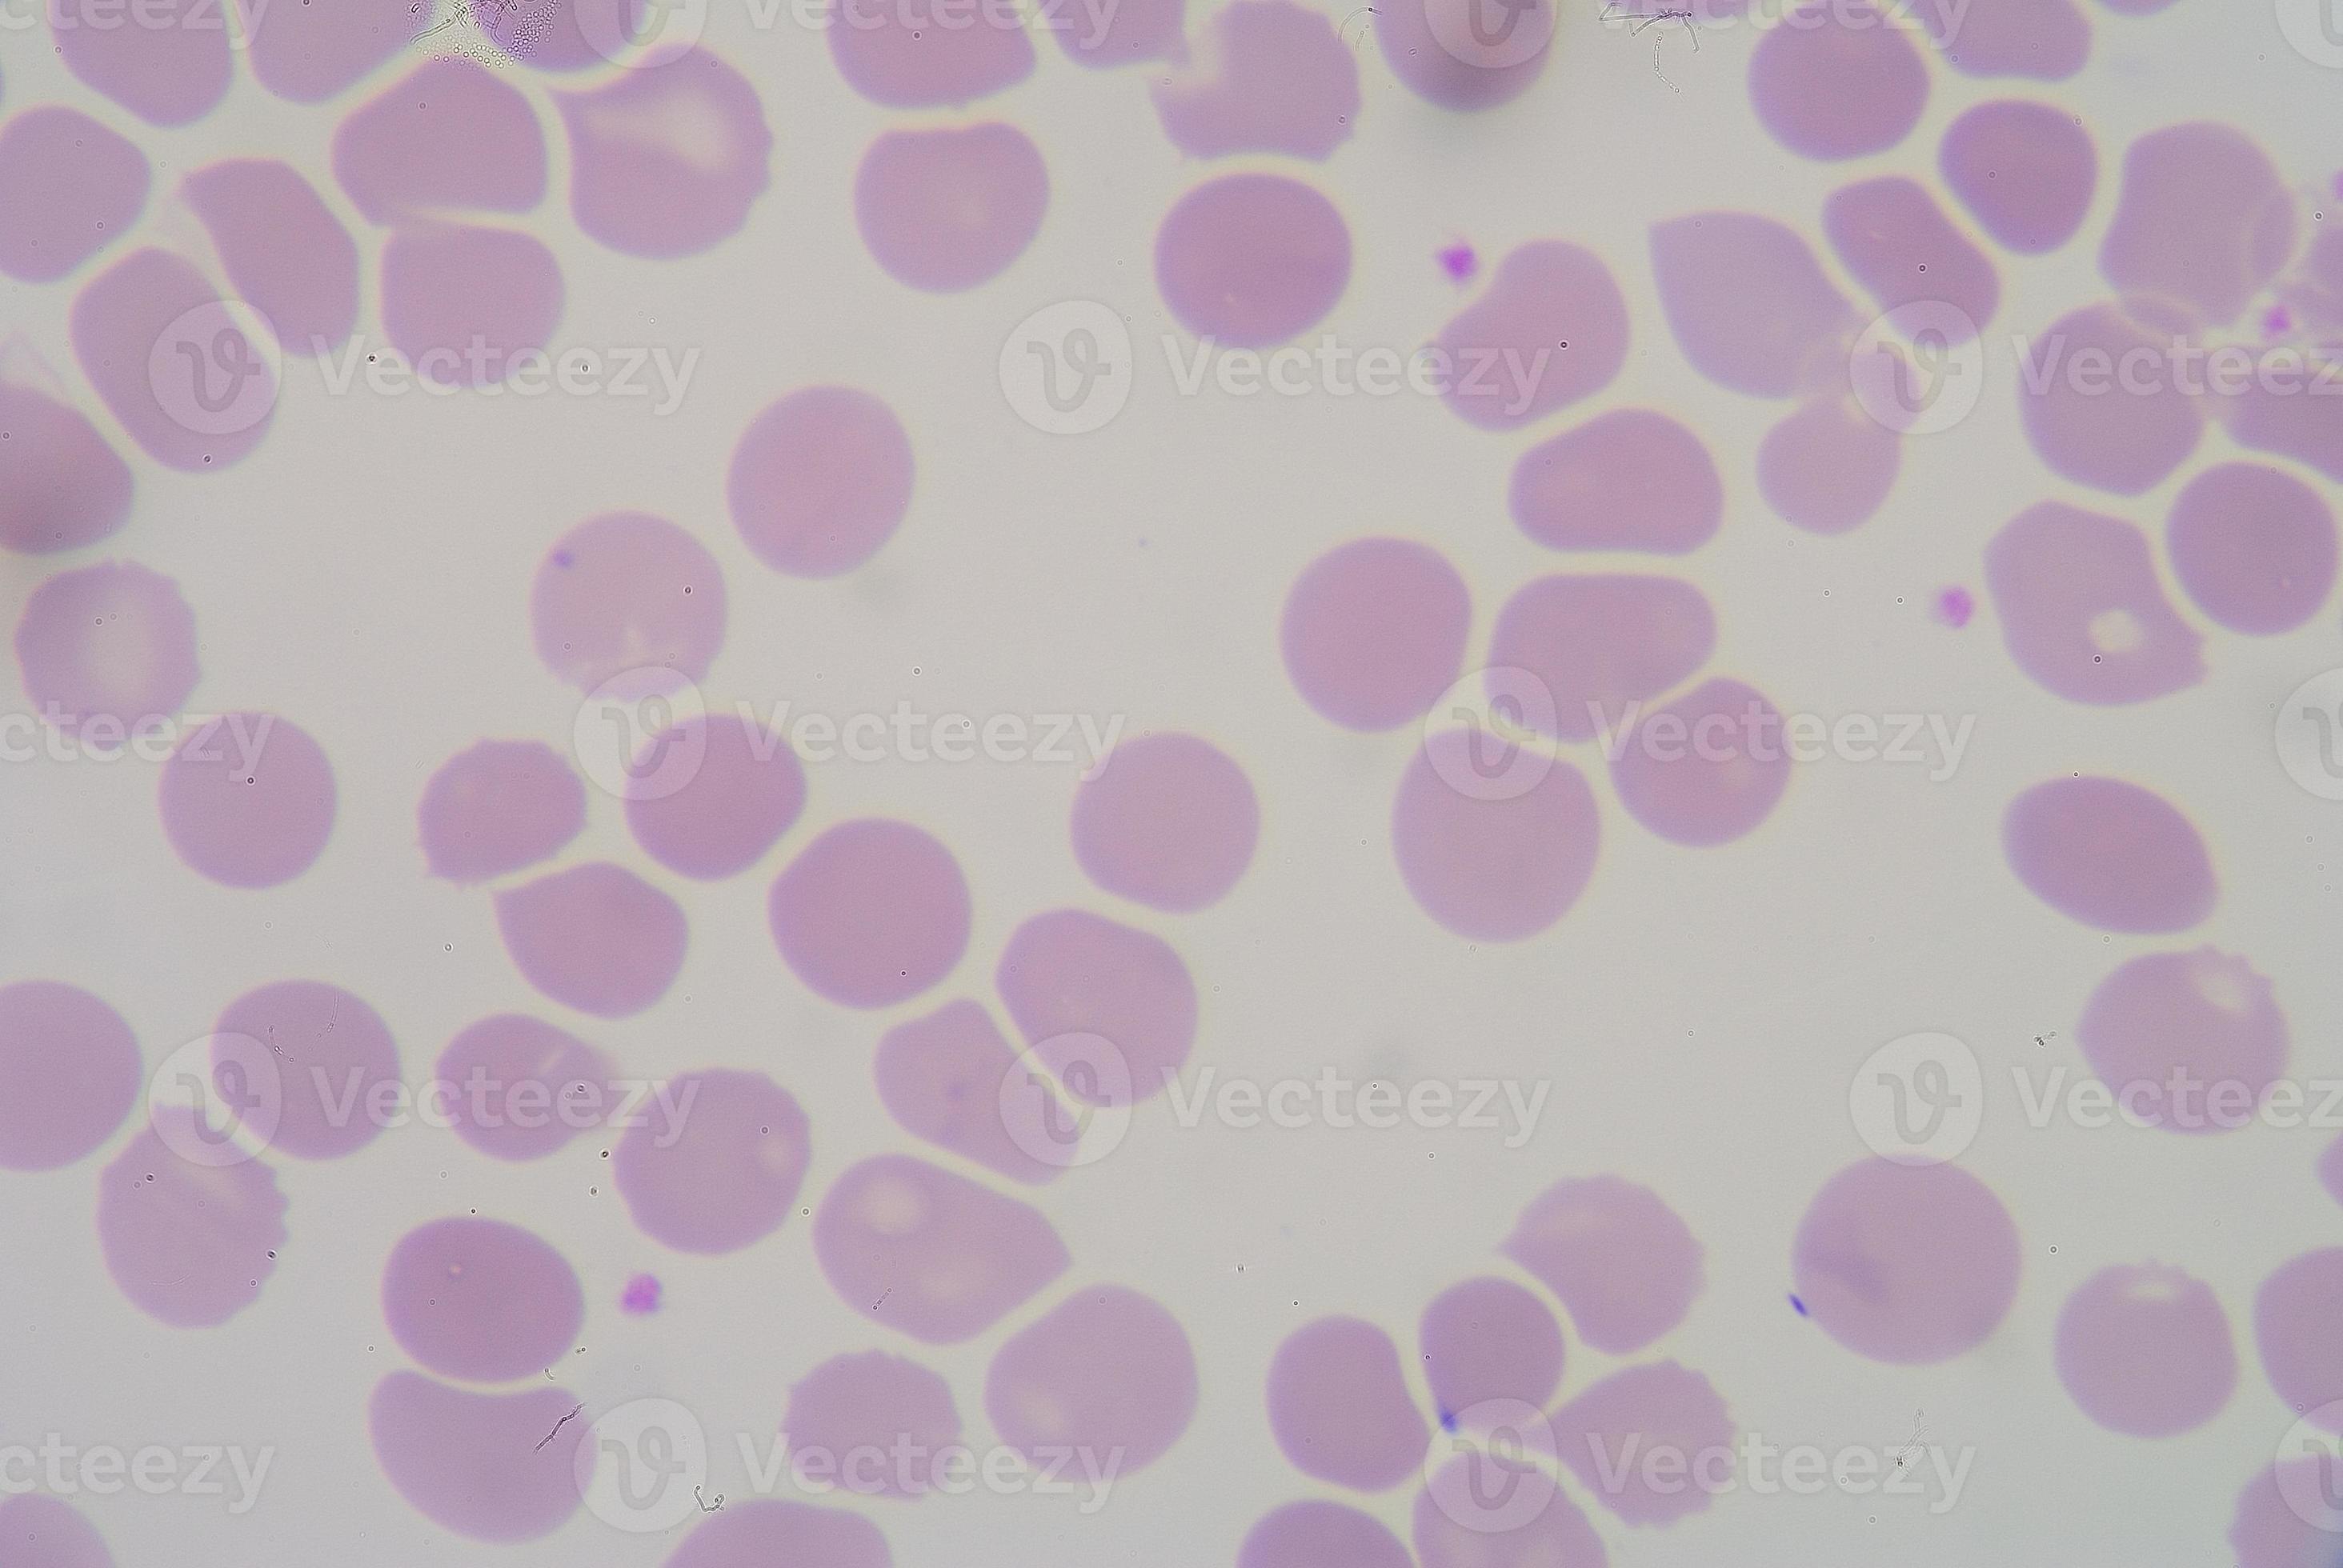 rode bloedcellen vormen macrocytose. foto